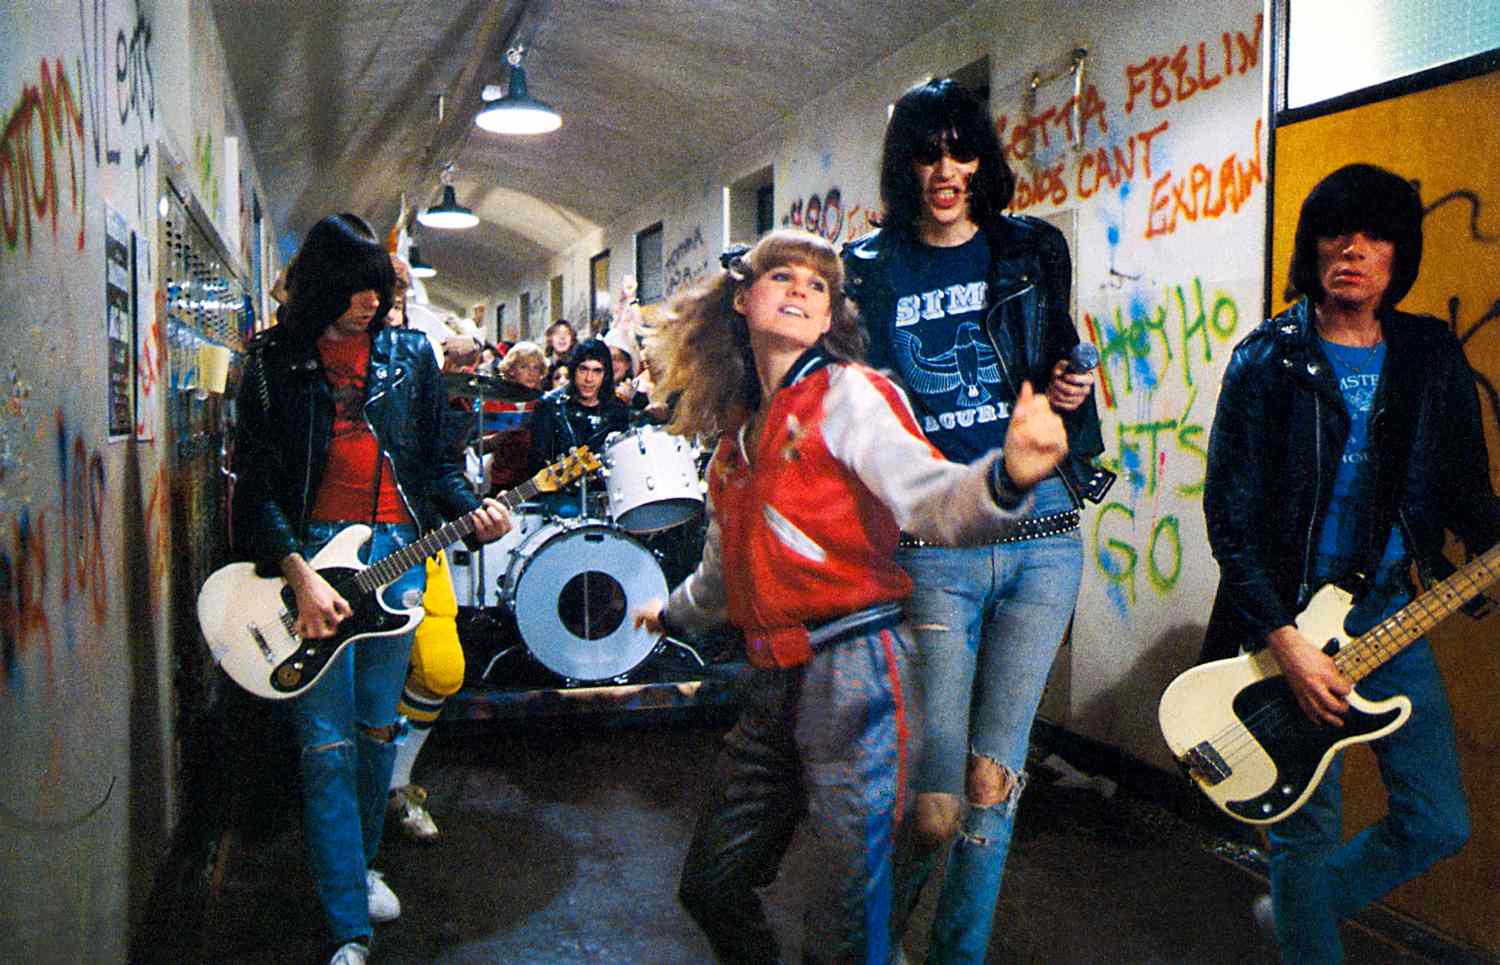 ROCK 'N' ROLL HIGH SCHOOL, from left: Johnny Ramone, Marky Ramone, P.J. Soles, Joey Ramone, Dee Dee Ramone, 1979